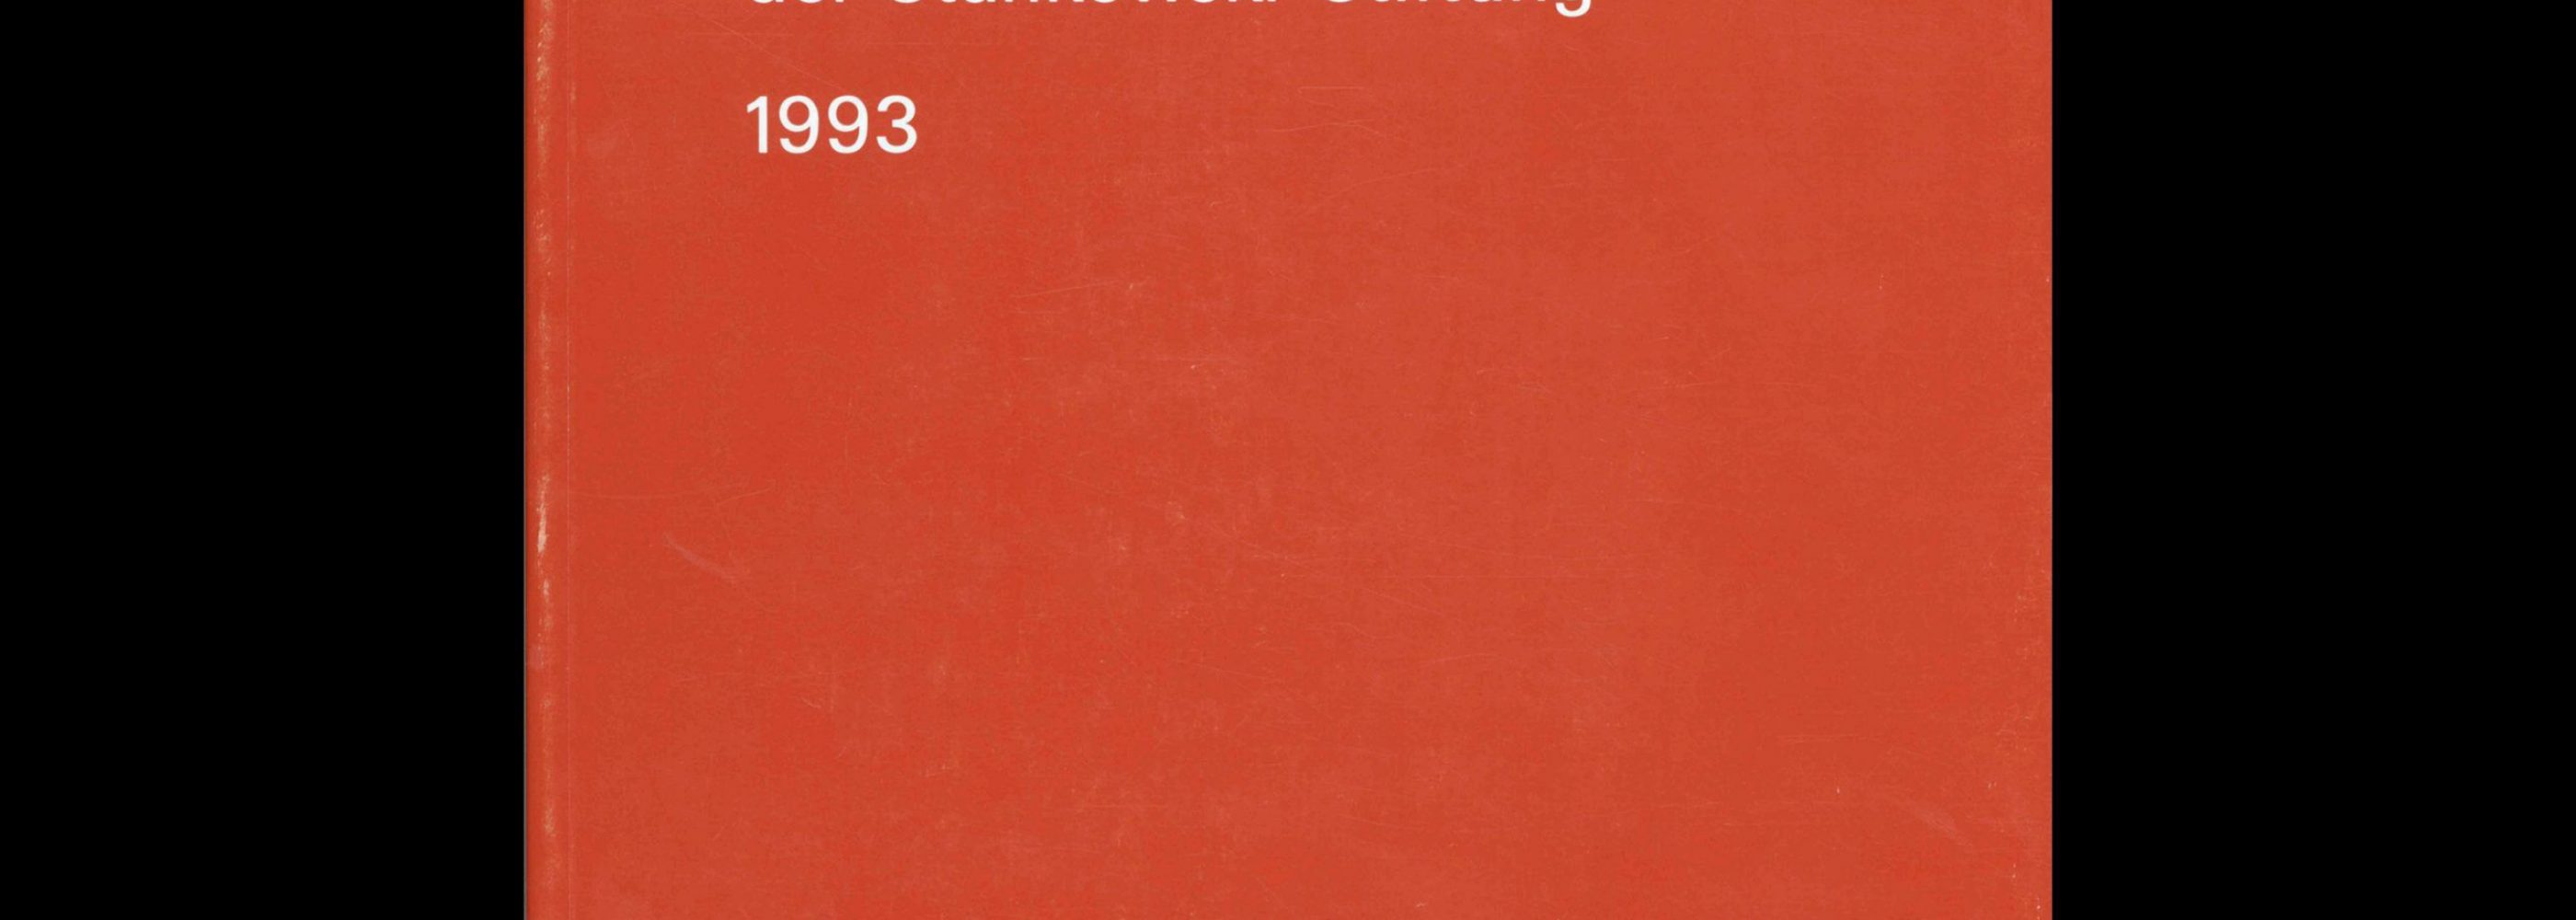 Kunst + Design, Donald Judd –Preisträger der, Stankowski-Stiftung, 1993